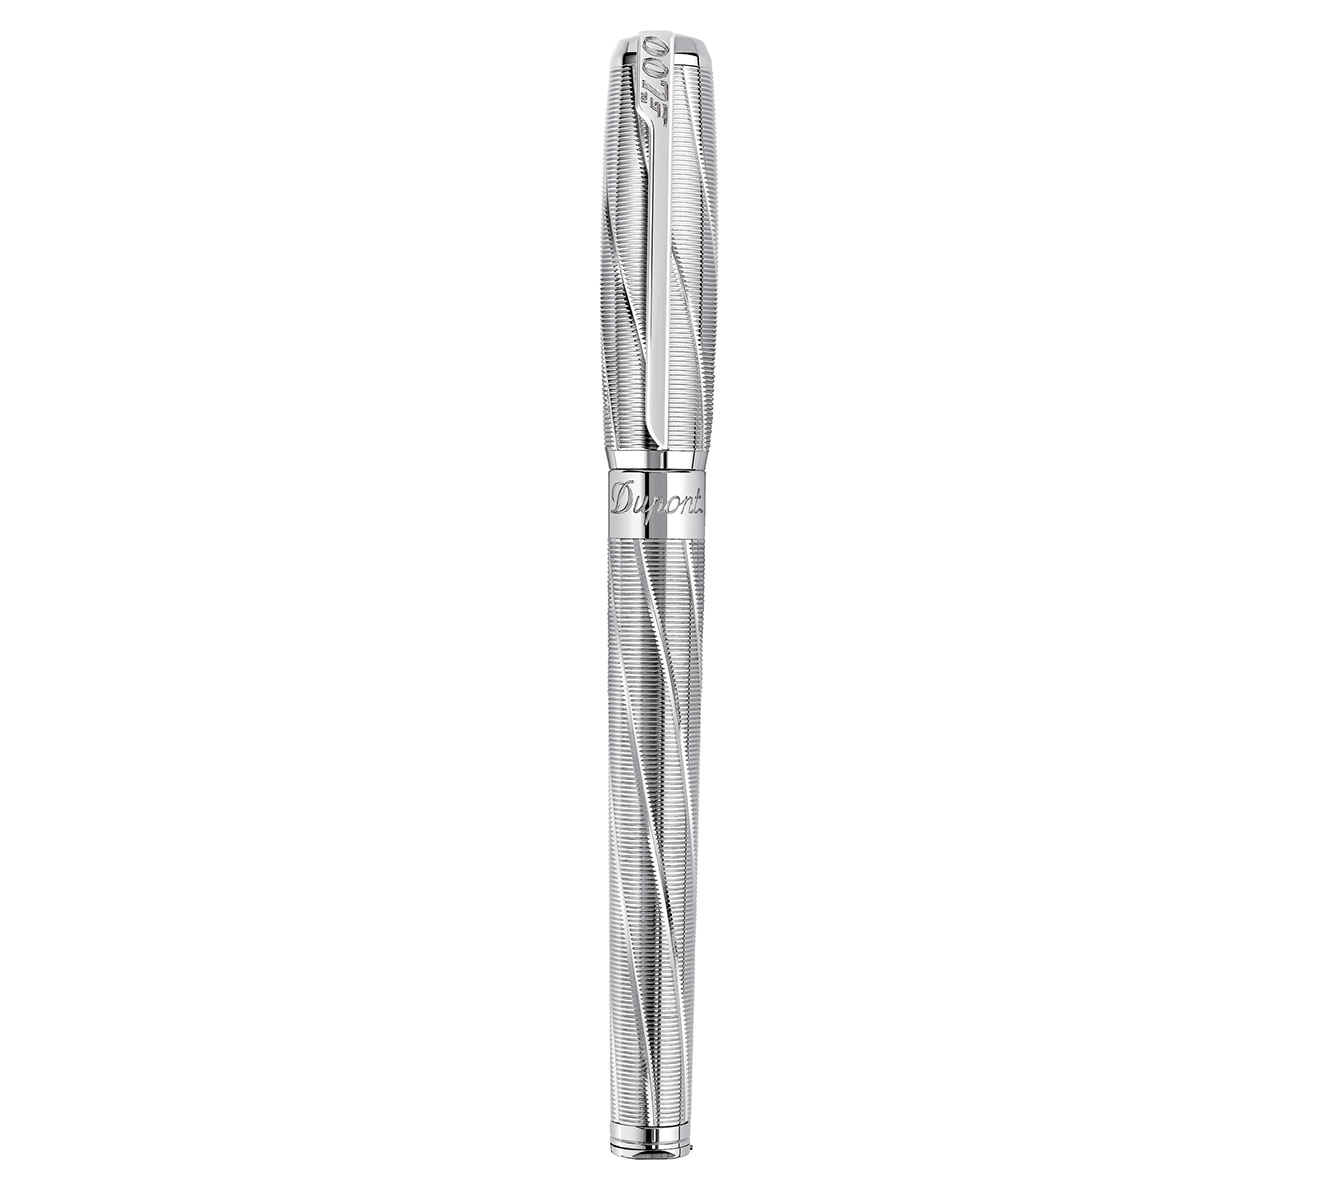 Ручка-роллер Premium S.T. Dupont James Bond 142033 - фото 1 – Mercury